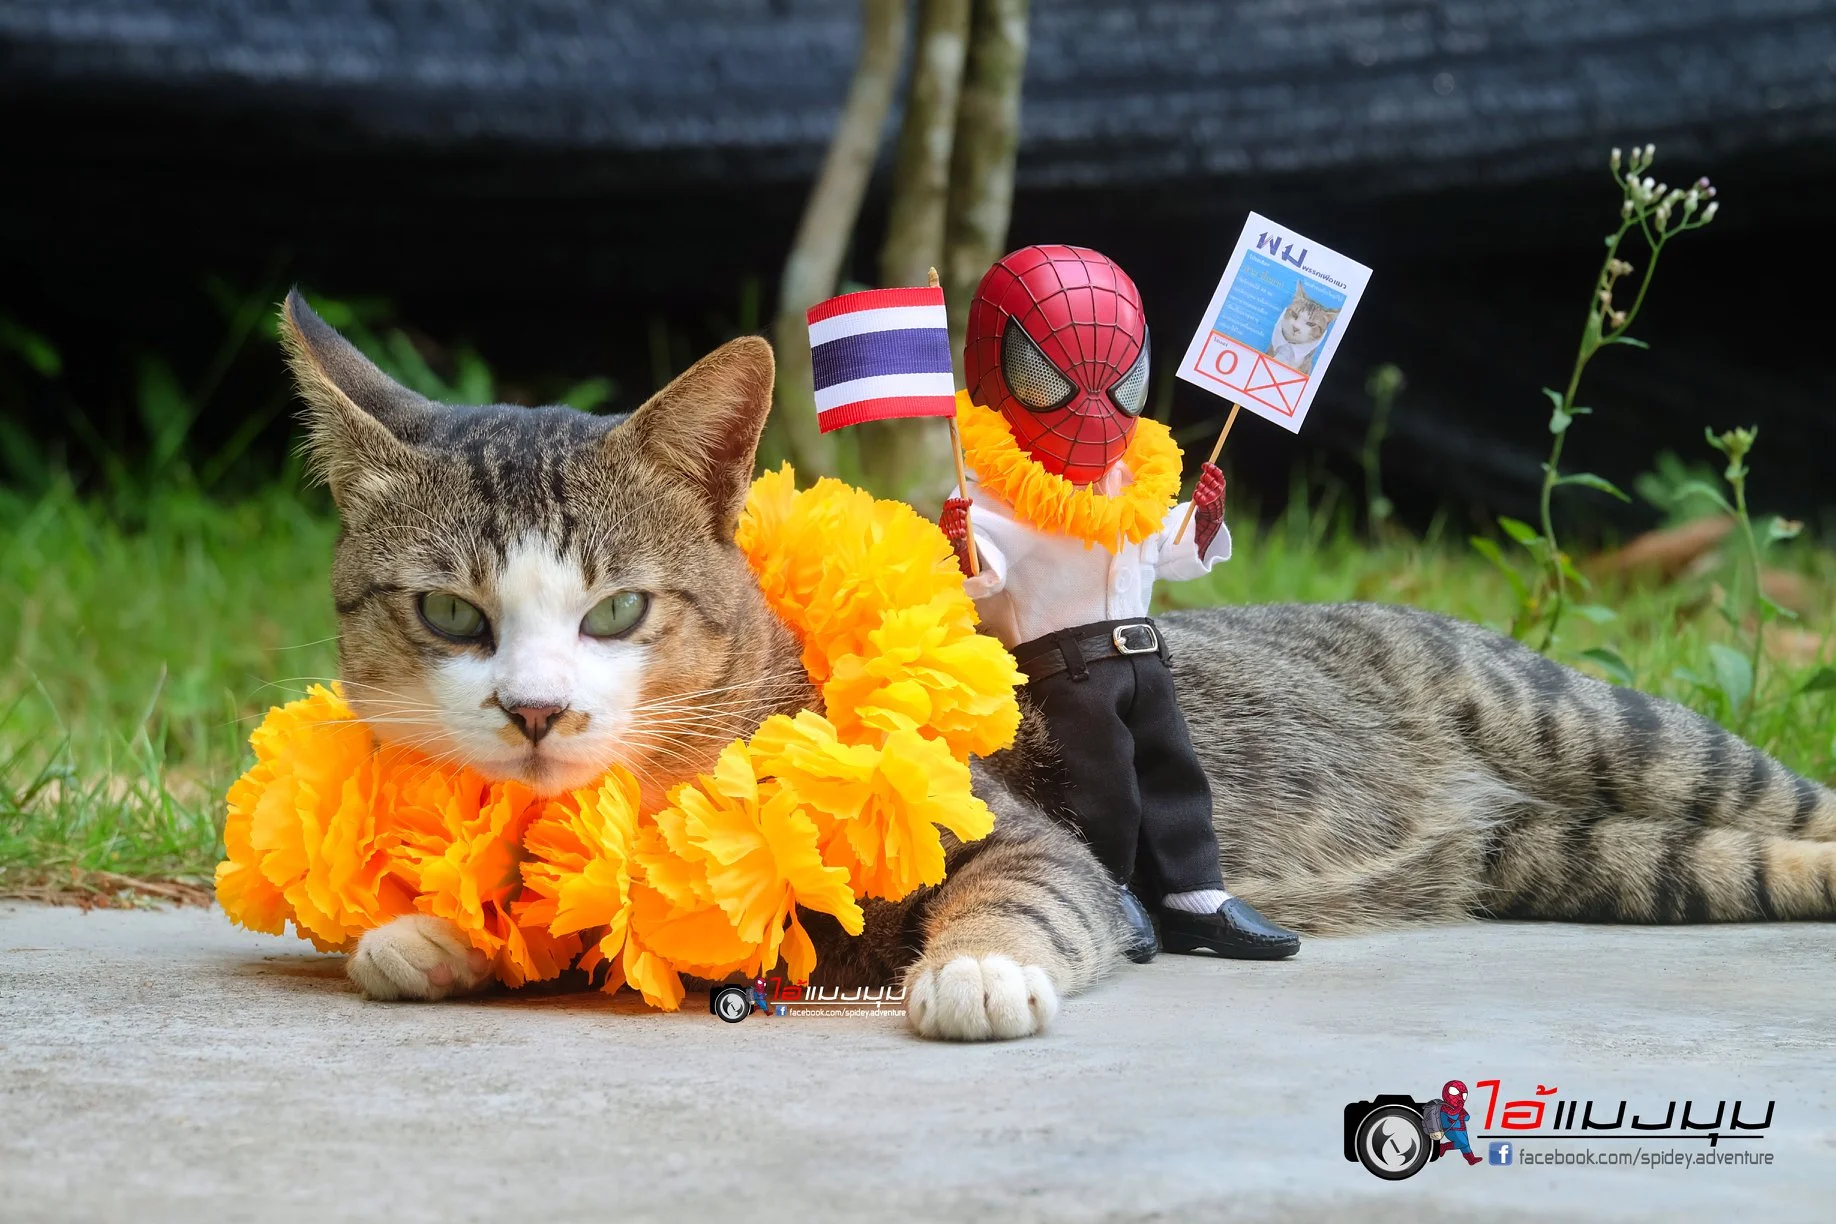 Художник добавил к фото с котиками изображение Человека-паука – это выглядит очень смешно - фото 459360